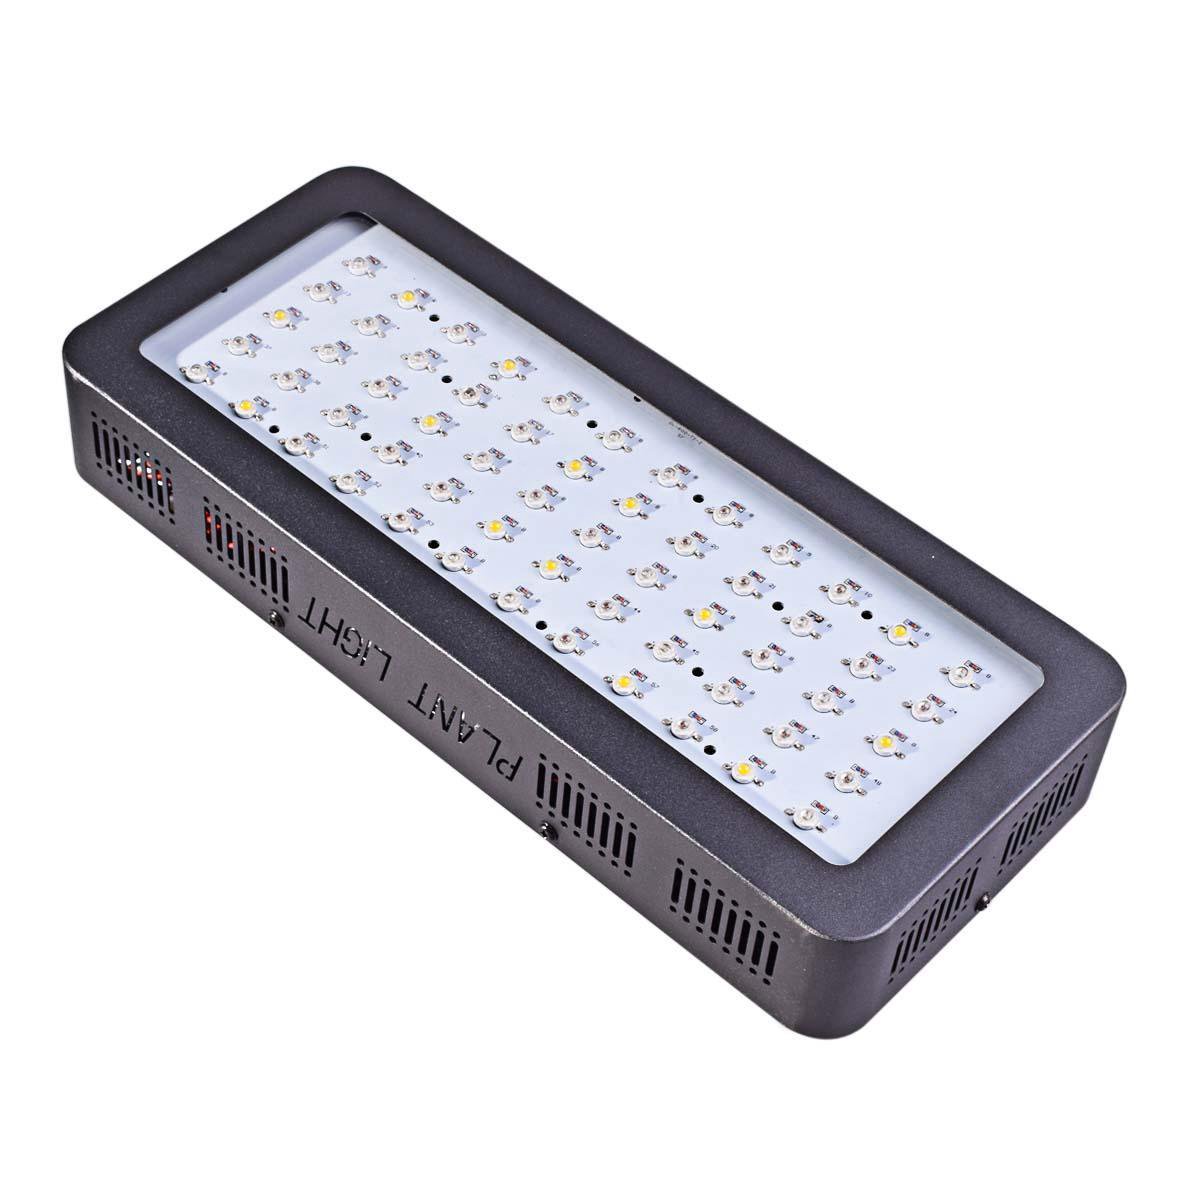 Ortho® - Groeilamp paneel - Bloeilamp paneel - Kweeklamp - Grow light panel - LED Met ingebouwde koeling/ventilatie - Ortho